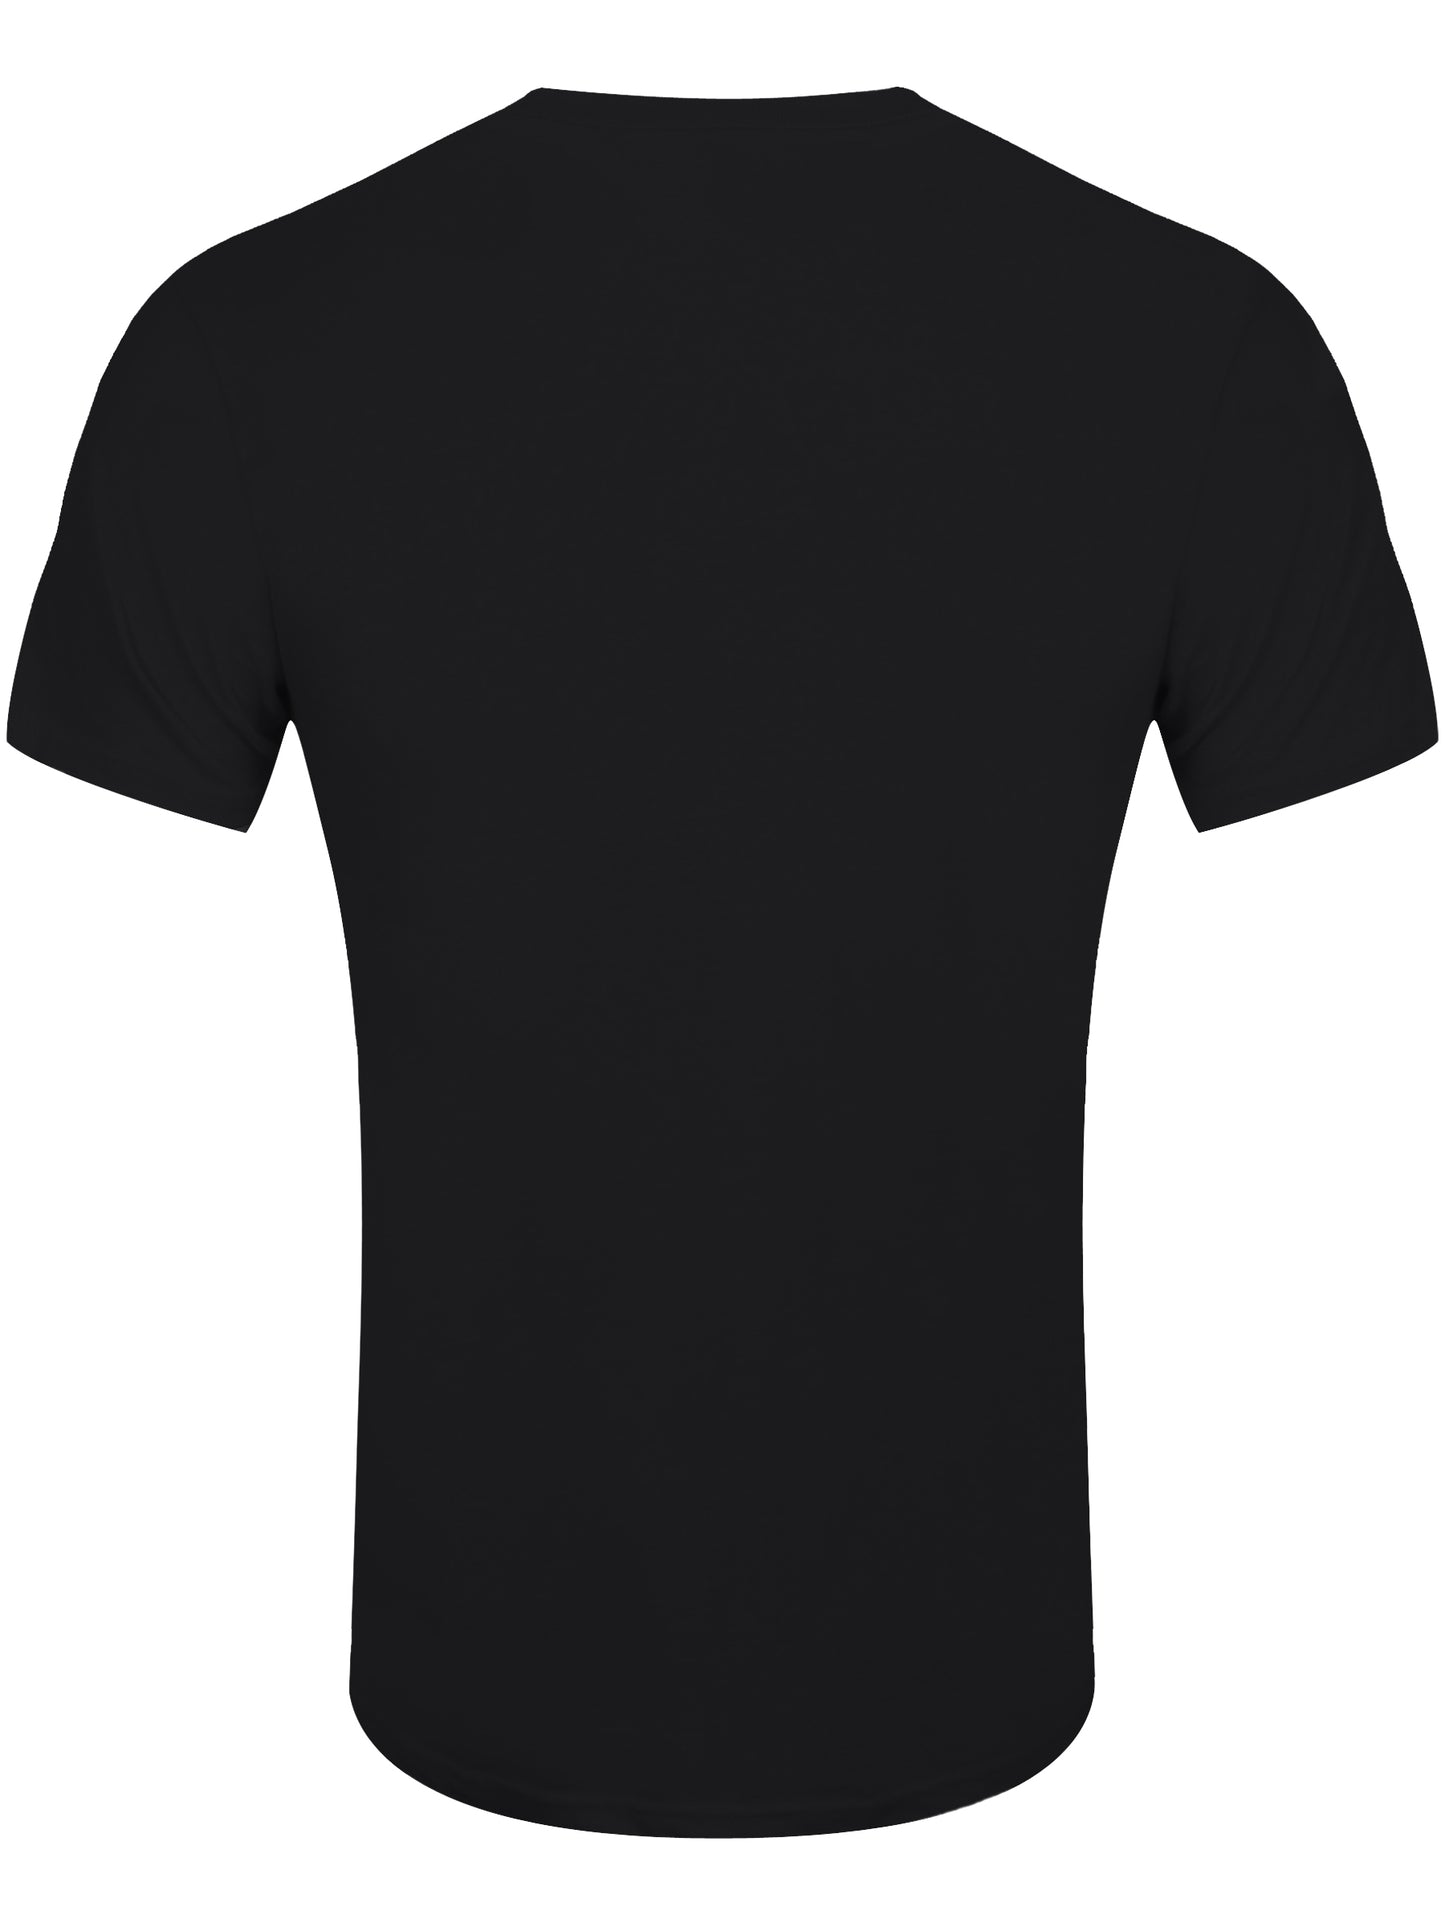 The Cure Boys Don't Cry Colour Men's Black T-Shirt